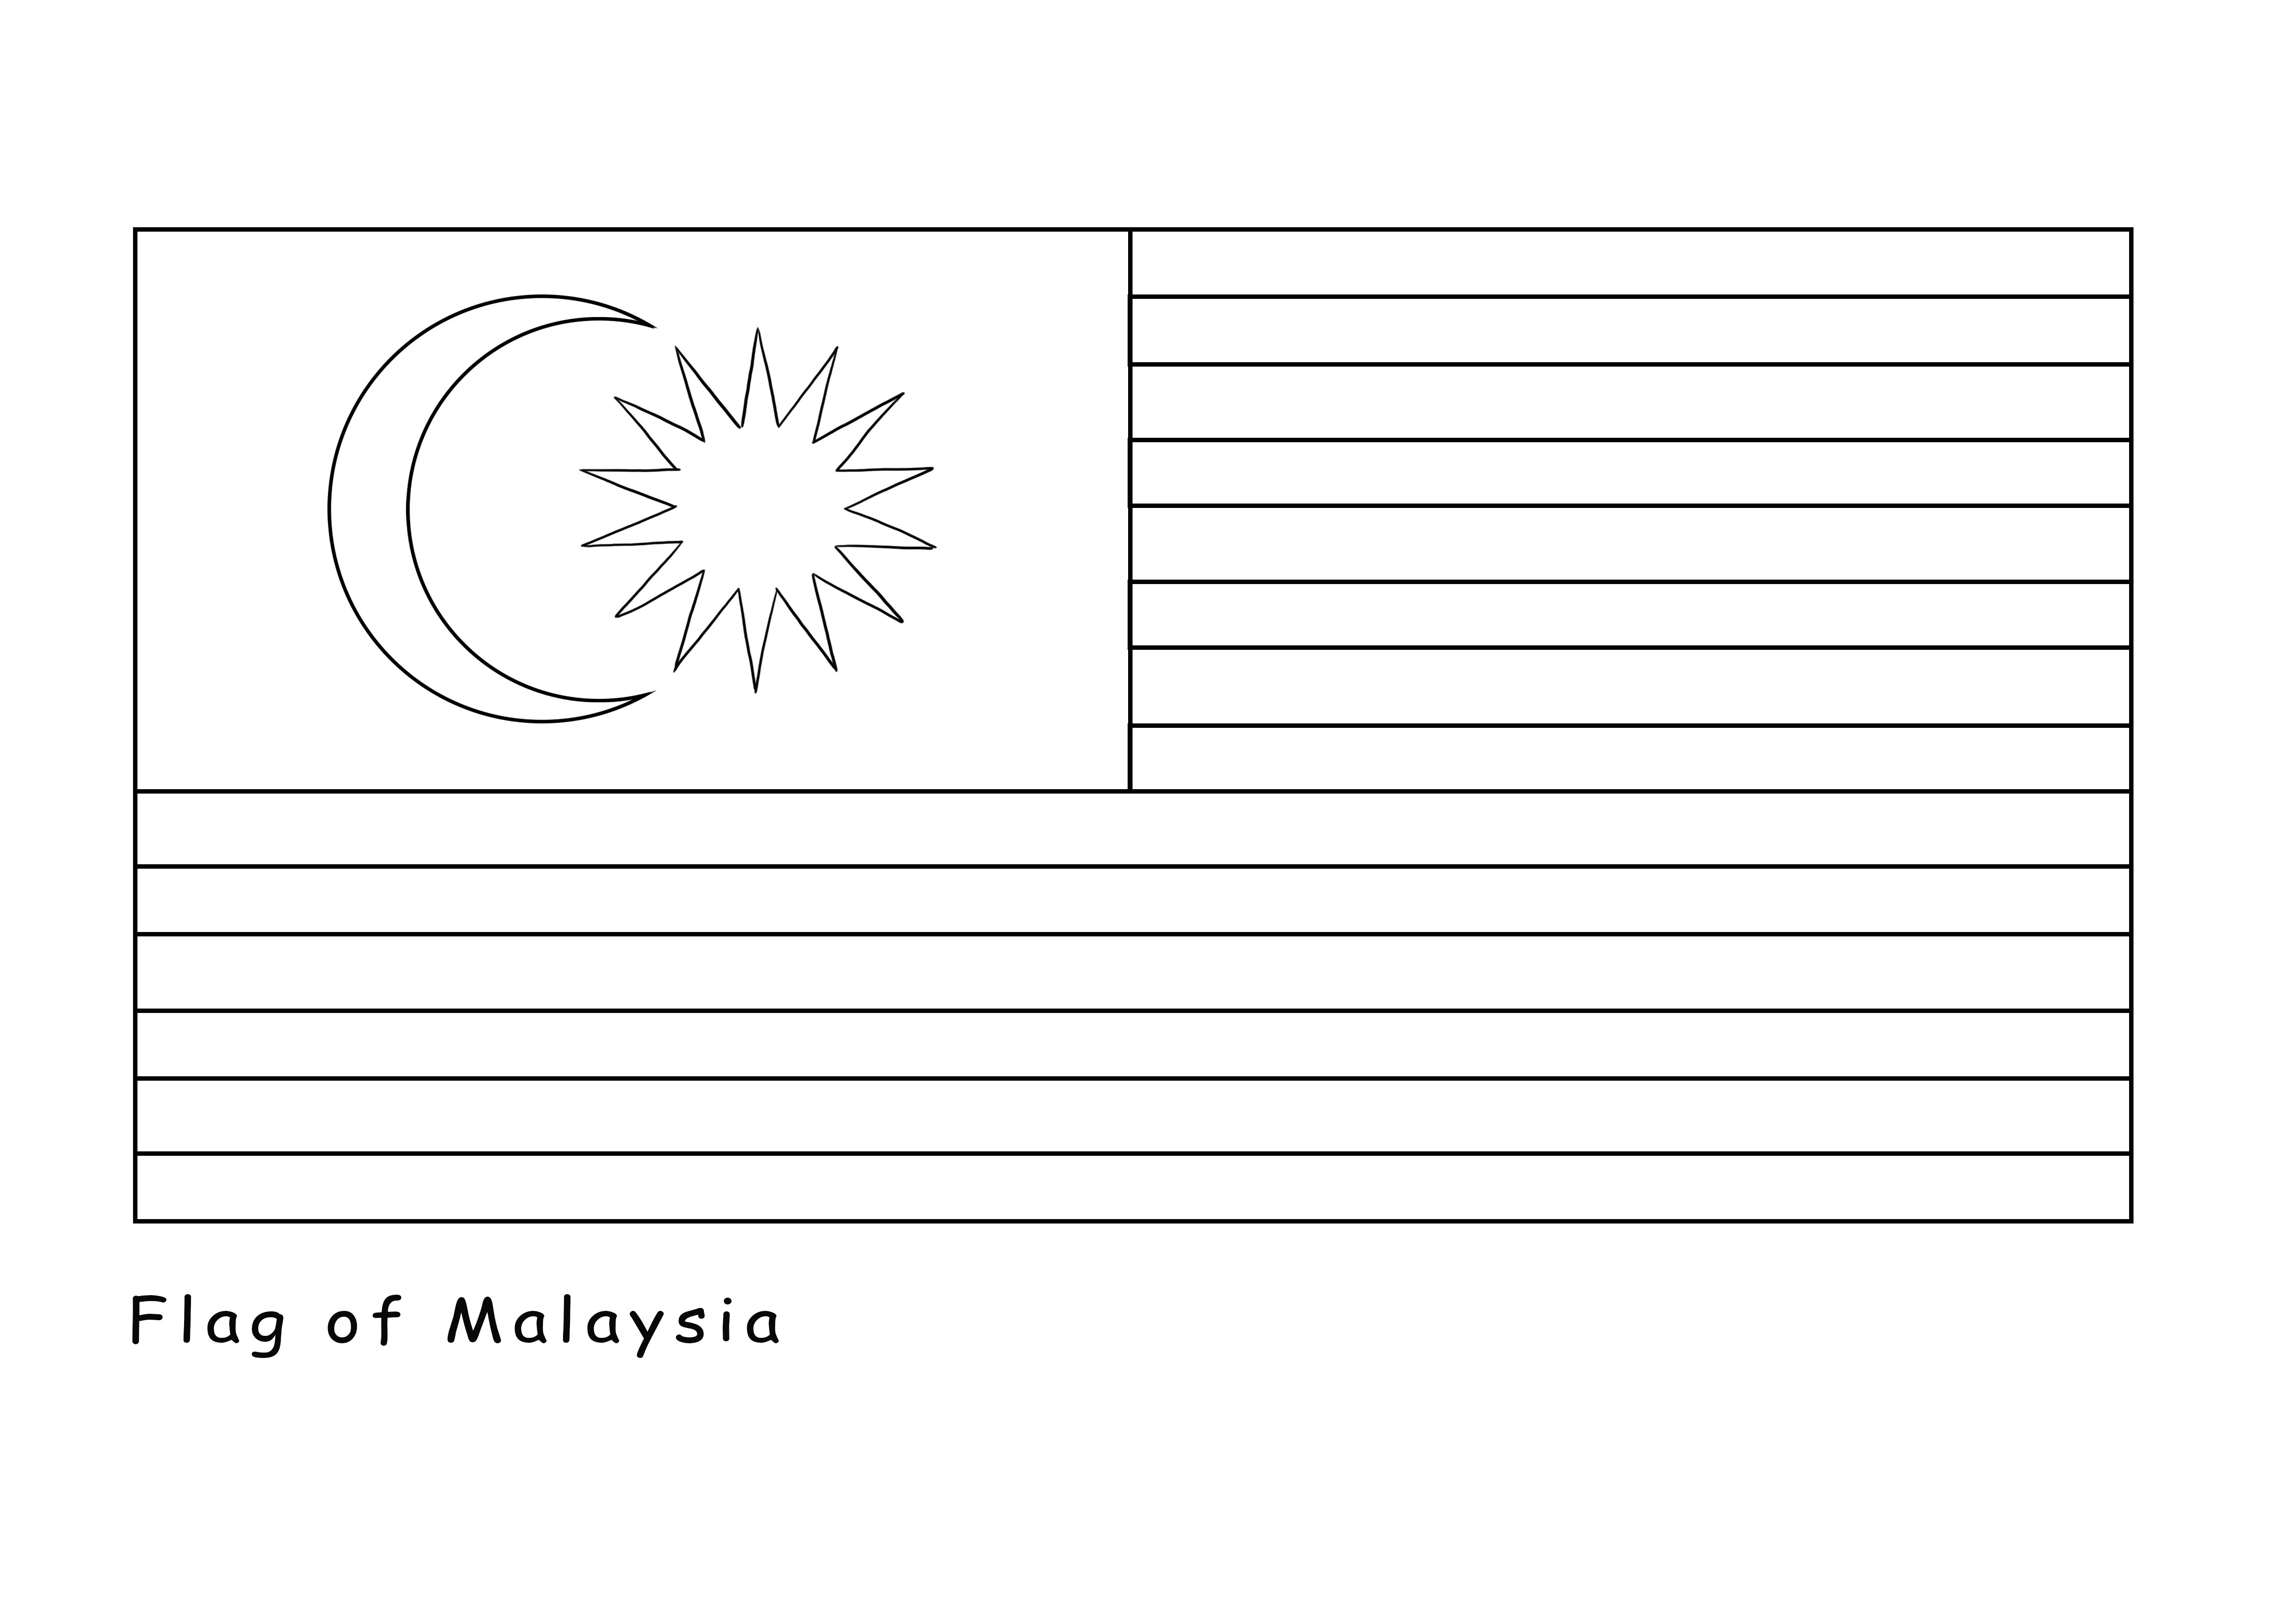 Imprimible gratis de la Bandera de Malasia se ofrece gratis para ser coloreado